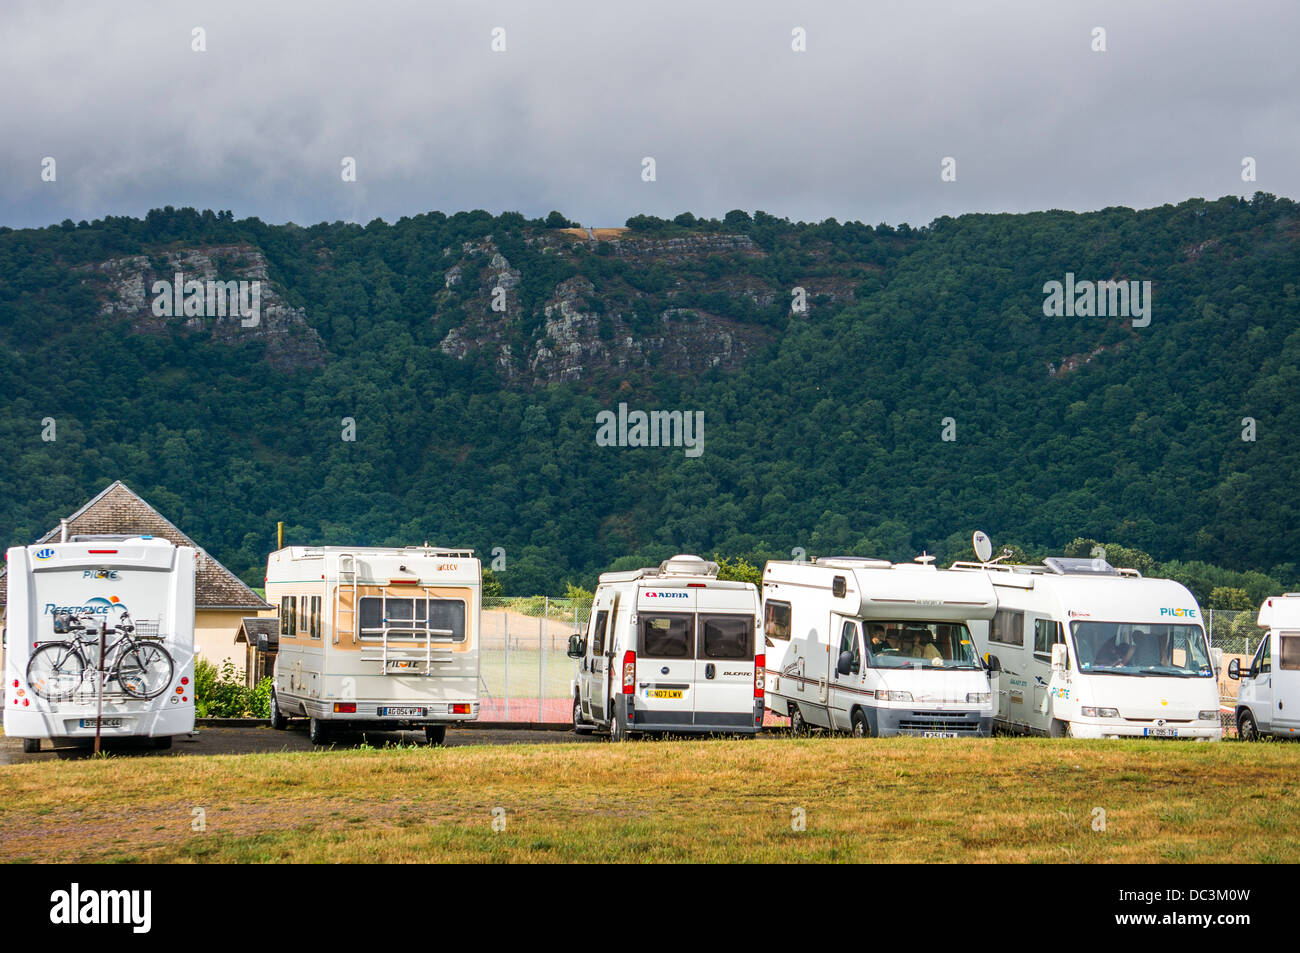 Le camping aire-de-camping-car escale à Clécy, Calvados, Normandie, nord de  la France. Clecy est le 'capital' de la région vallonnée, Suisse Normande  Photo Stock - Alamy